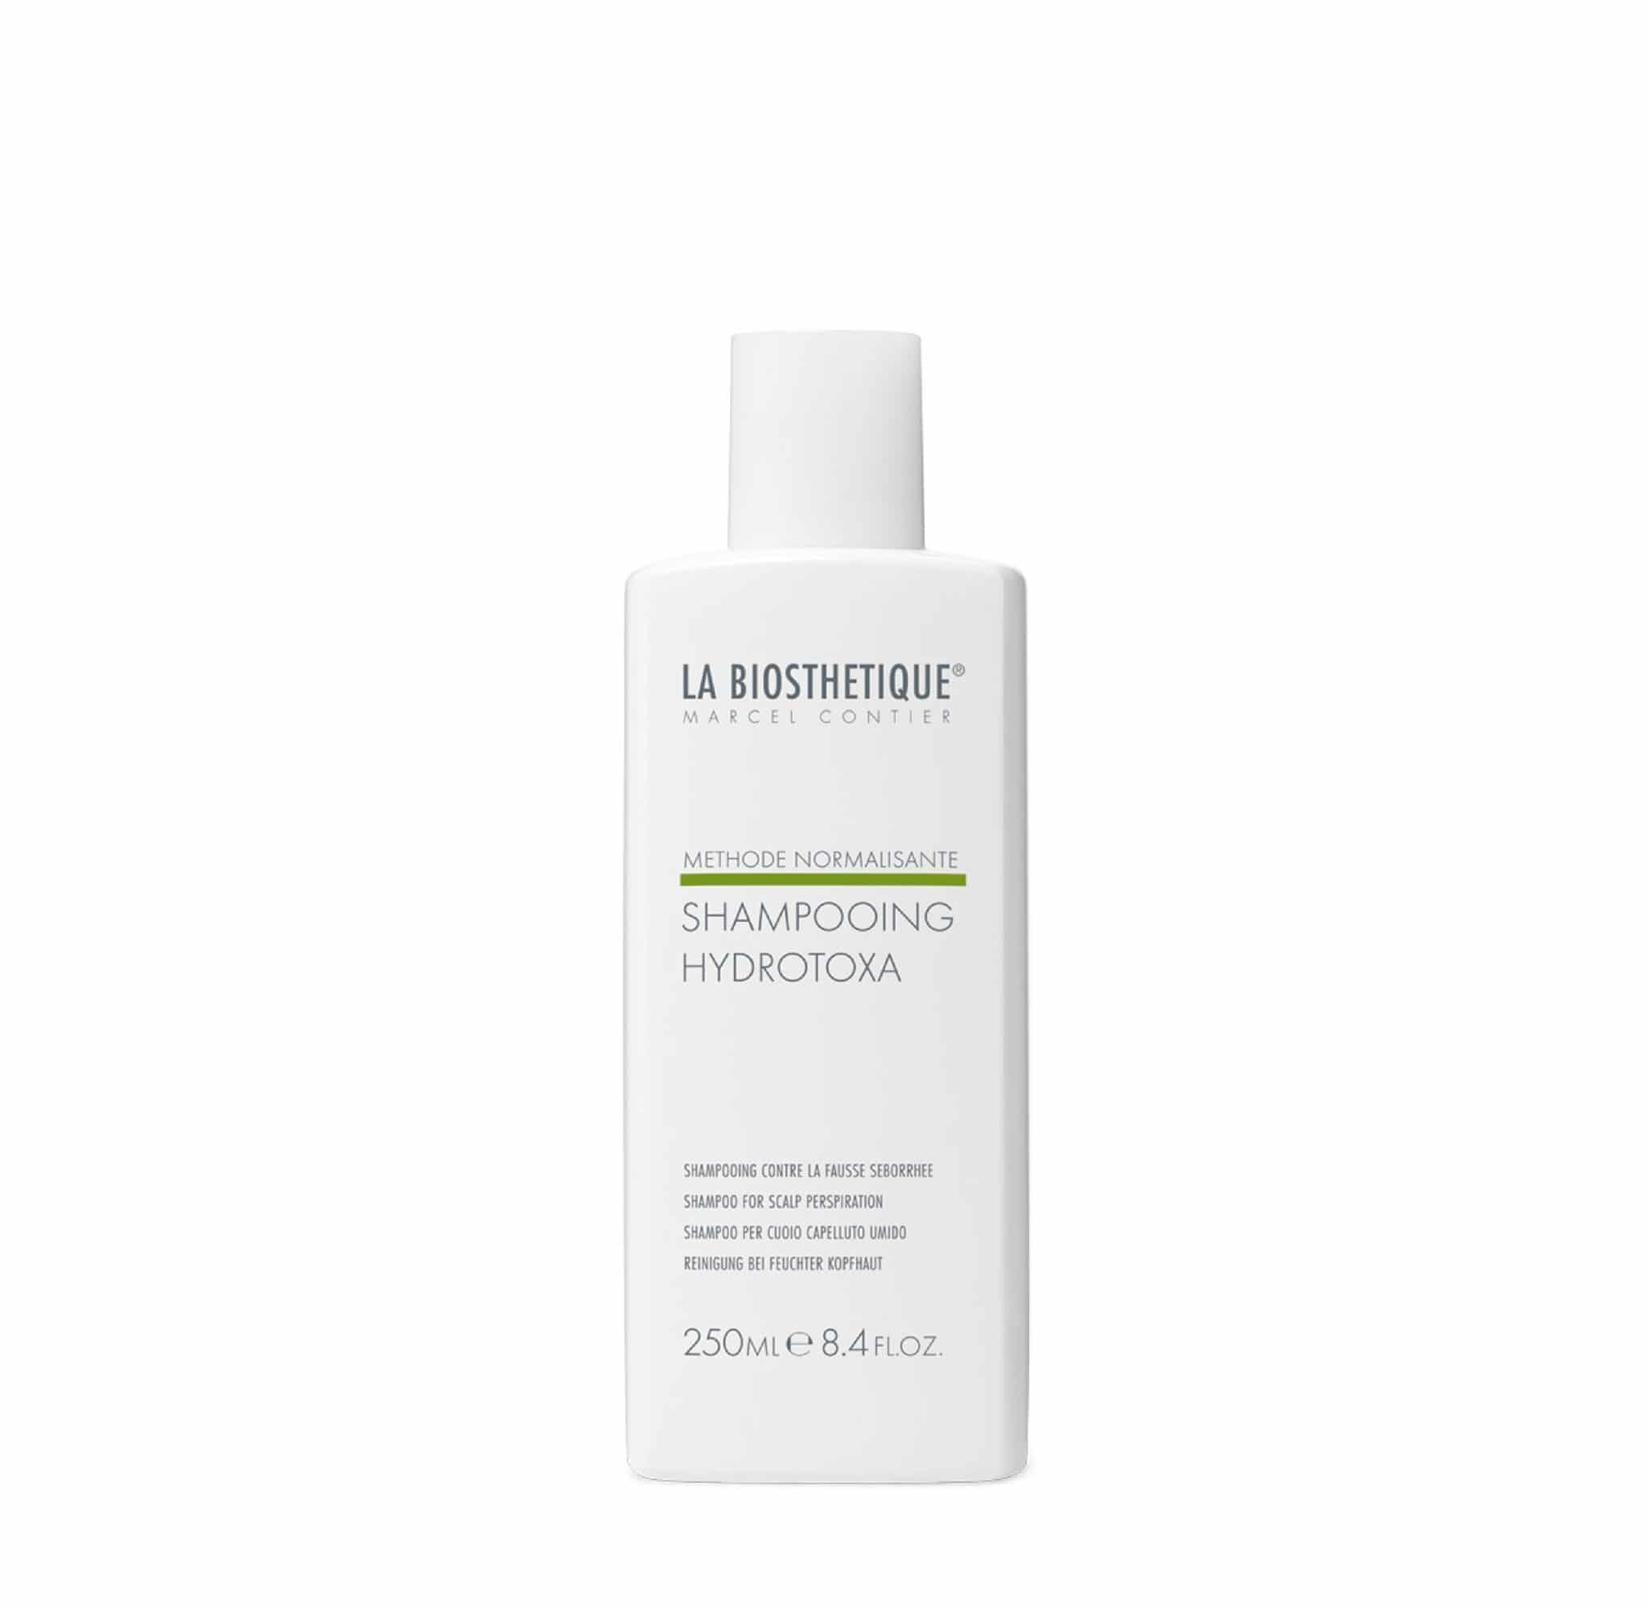 La Biosthetique Šampon za vlažno vlasište Shampooing Hydrotoxa 250 ml